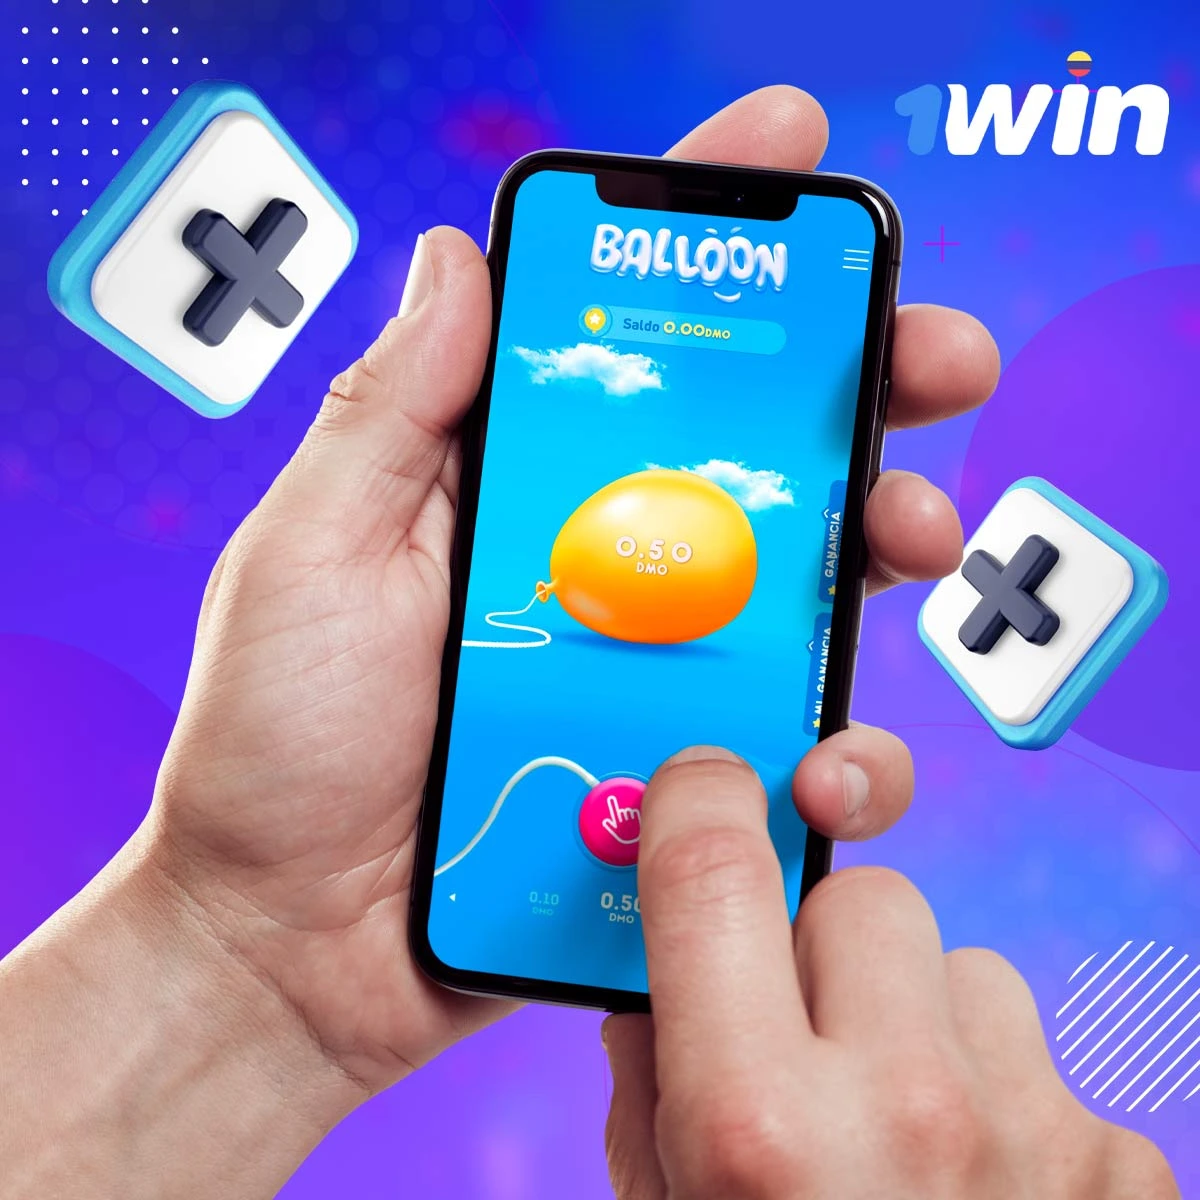 La versión demo del juego Balloon 1win te permitirá practicar la mejor estrategia sin riesgo de perder dinero